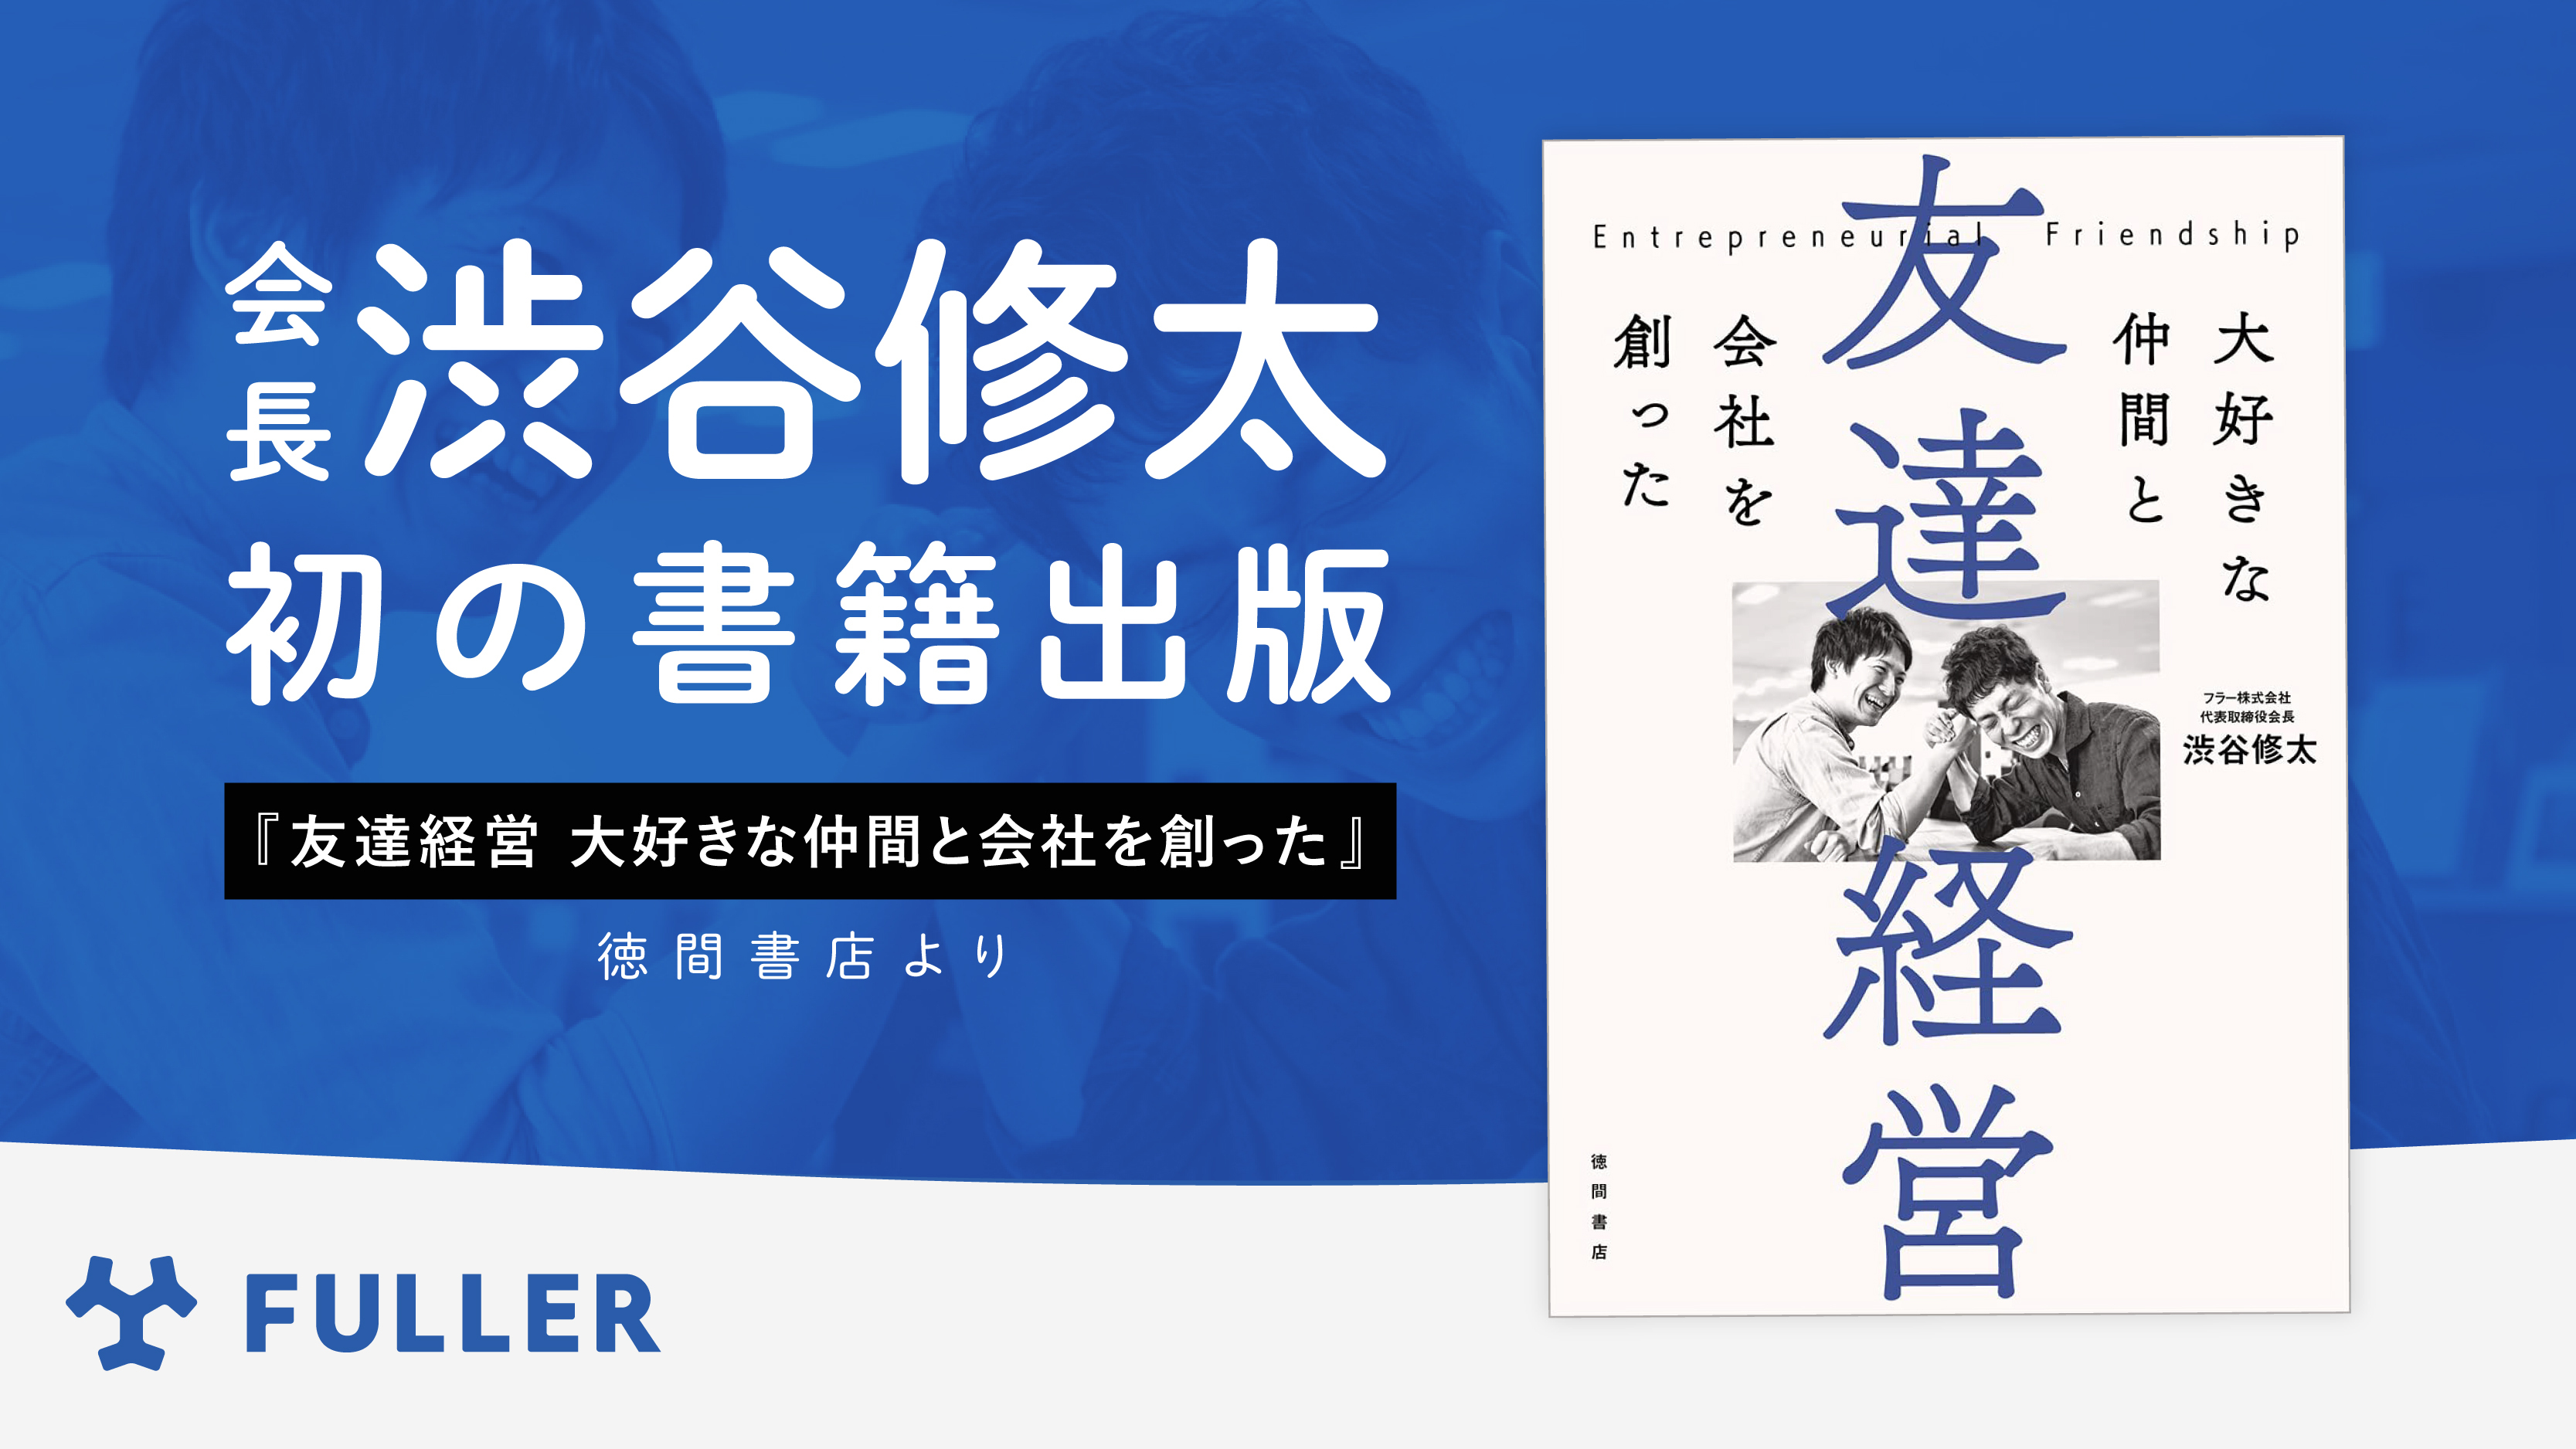 フラー会長の渋谷修太、初の書籍「友達経営 大好きな仲間と会社を創った」を出版